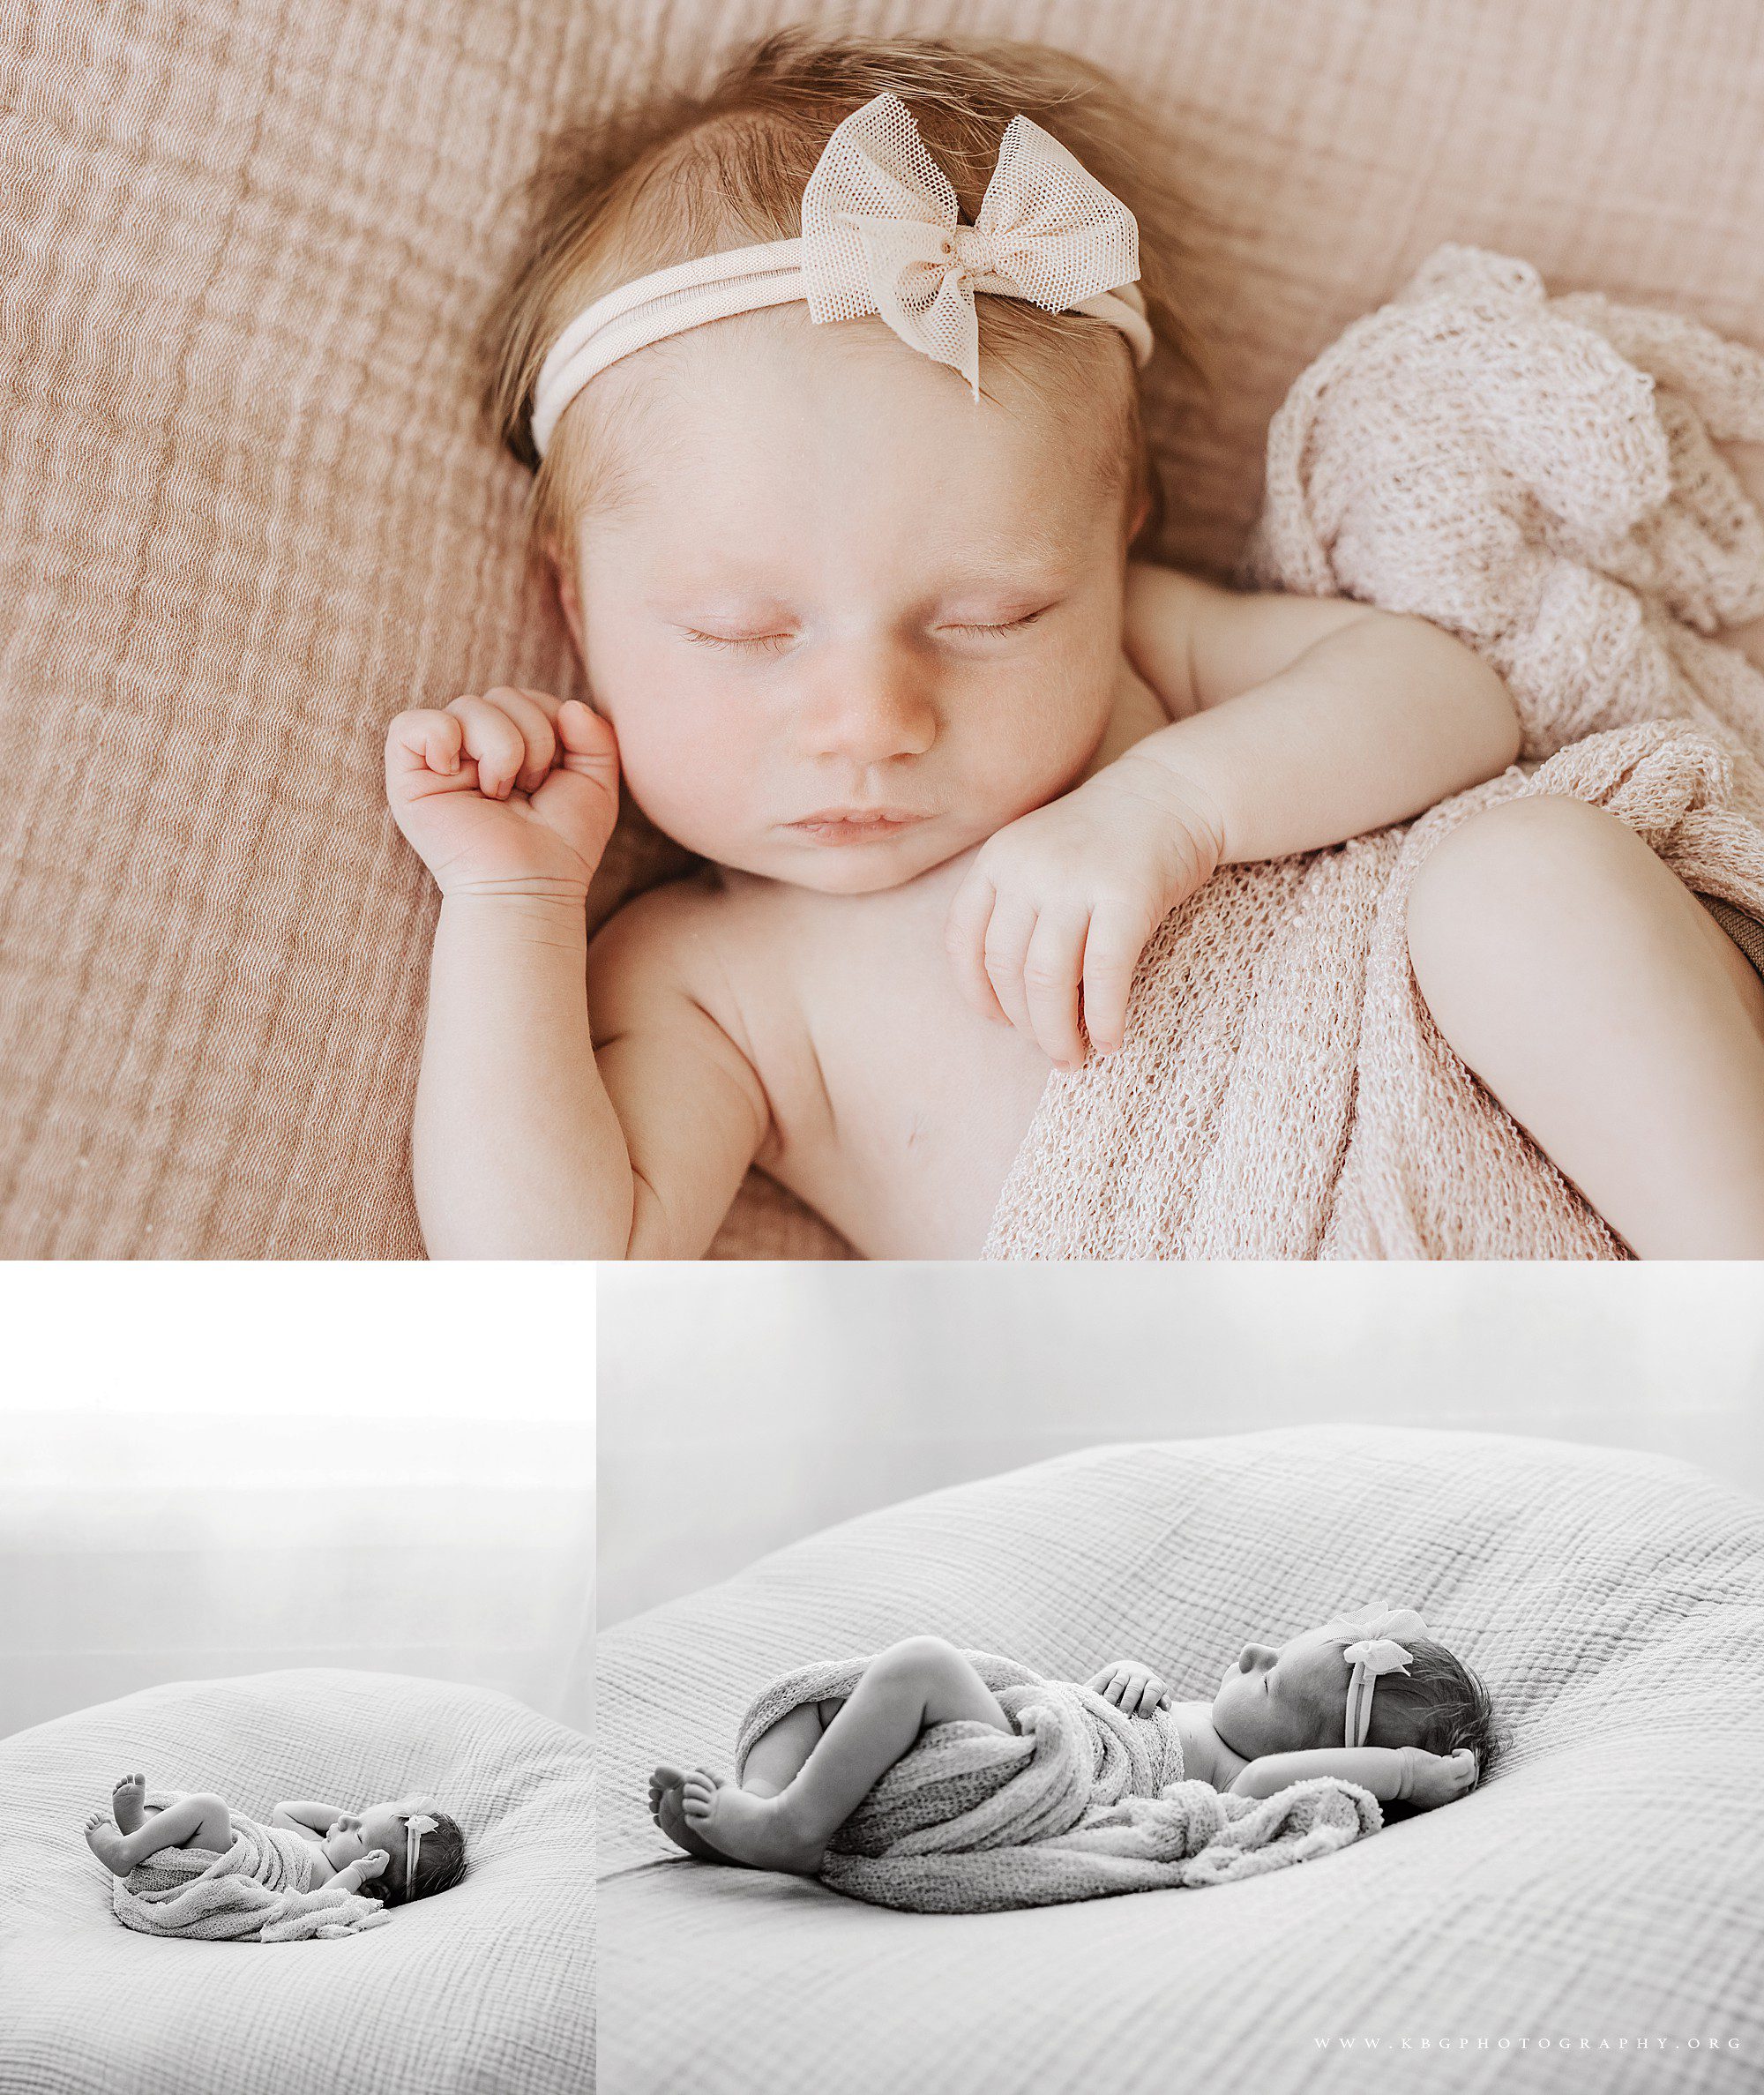 marietta photographer - newborn baby girl on beanbag